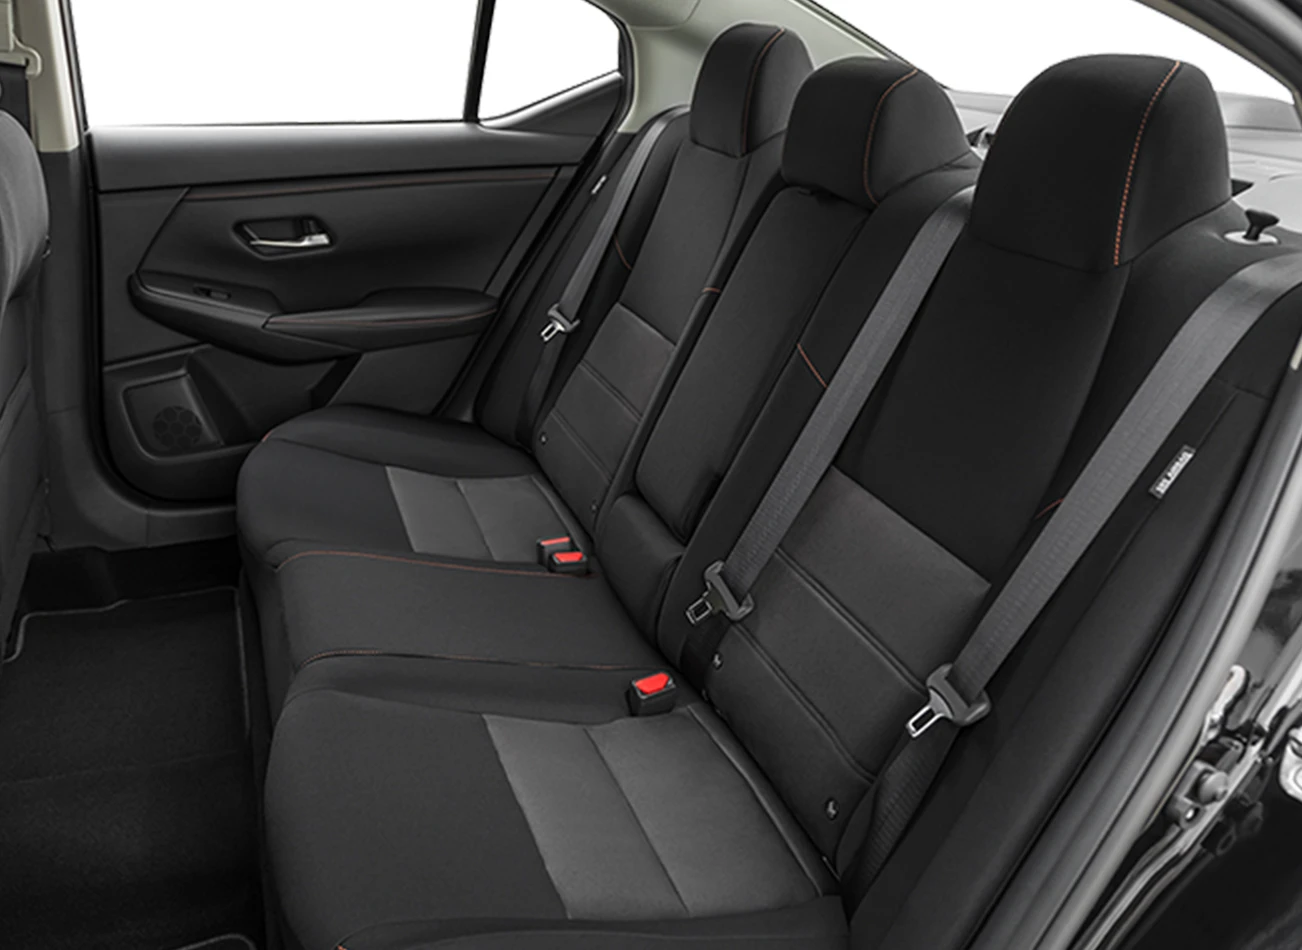 Nissan Sentra: Reviews, Photos, and More: Reasons to Buy #1 | CarMax